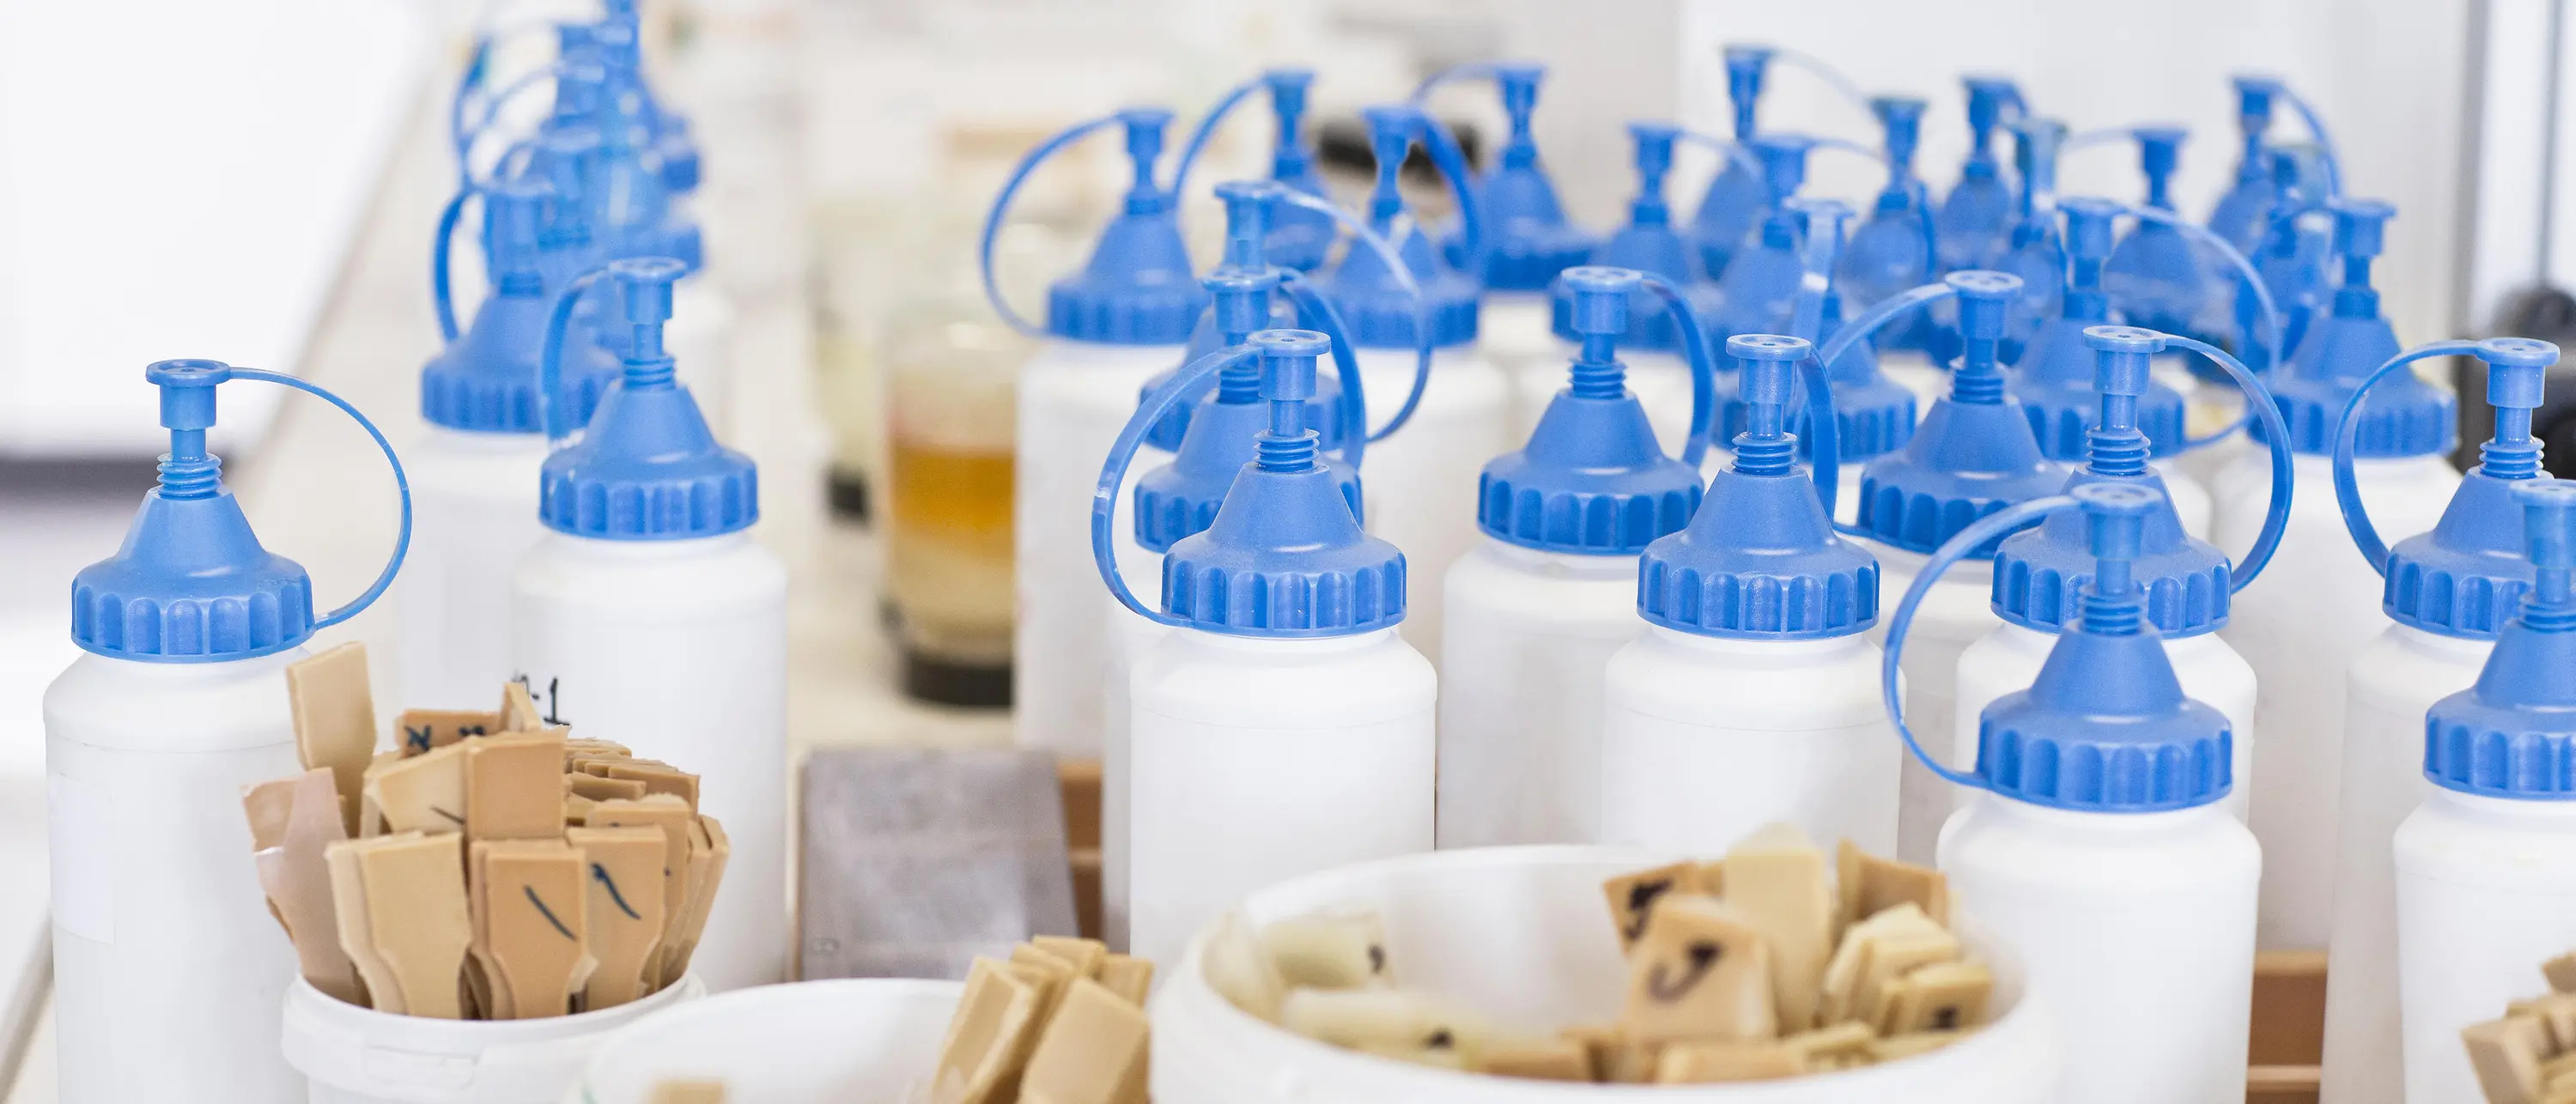 garrafas de plástico brancas com tampas azuis sob copos com pequenas espátulas de madeira